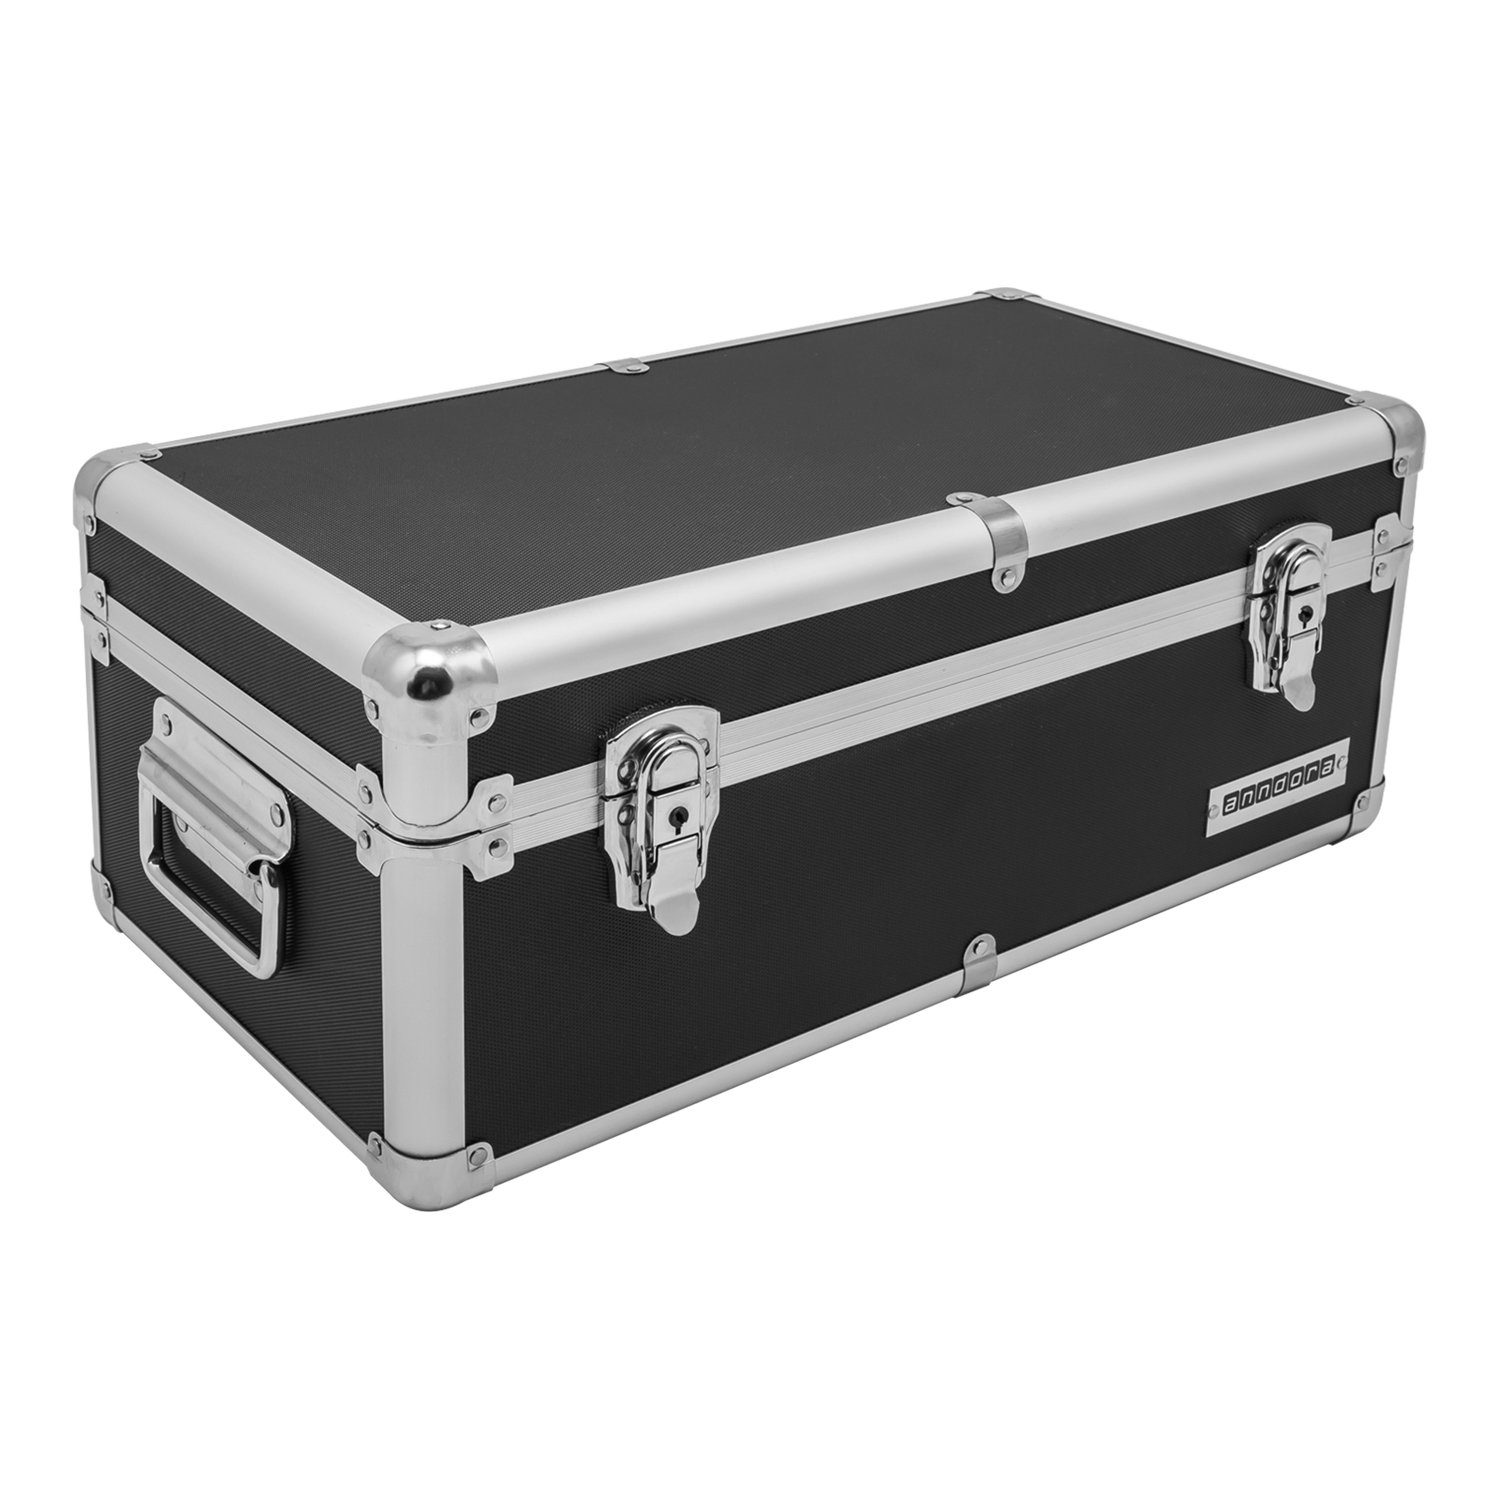 anndora Aufbewahrungsbox Alu Rahmenkoffer Transport Box Aufbewahrungskiste (schwarz)